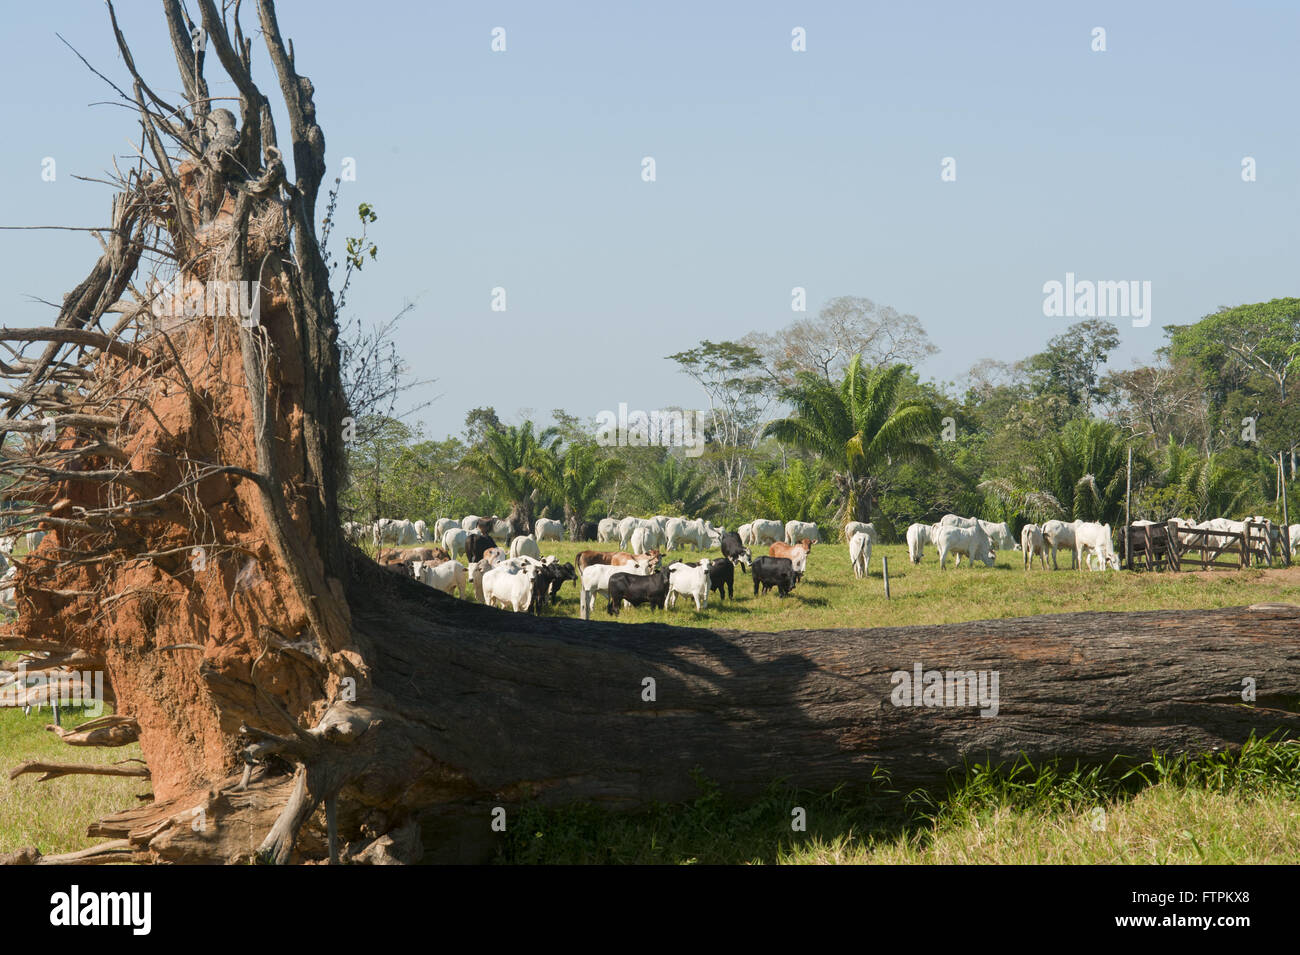 Caida Castanheira et création de bovins dans la zone déboisée amazon - Acre Banque D'Images